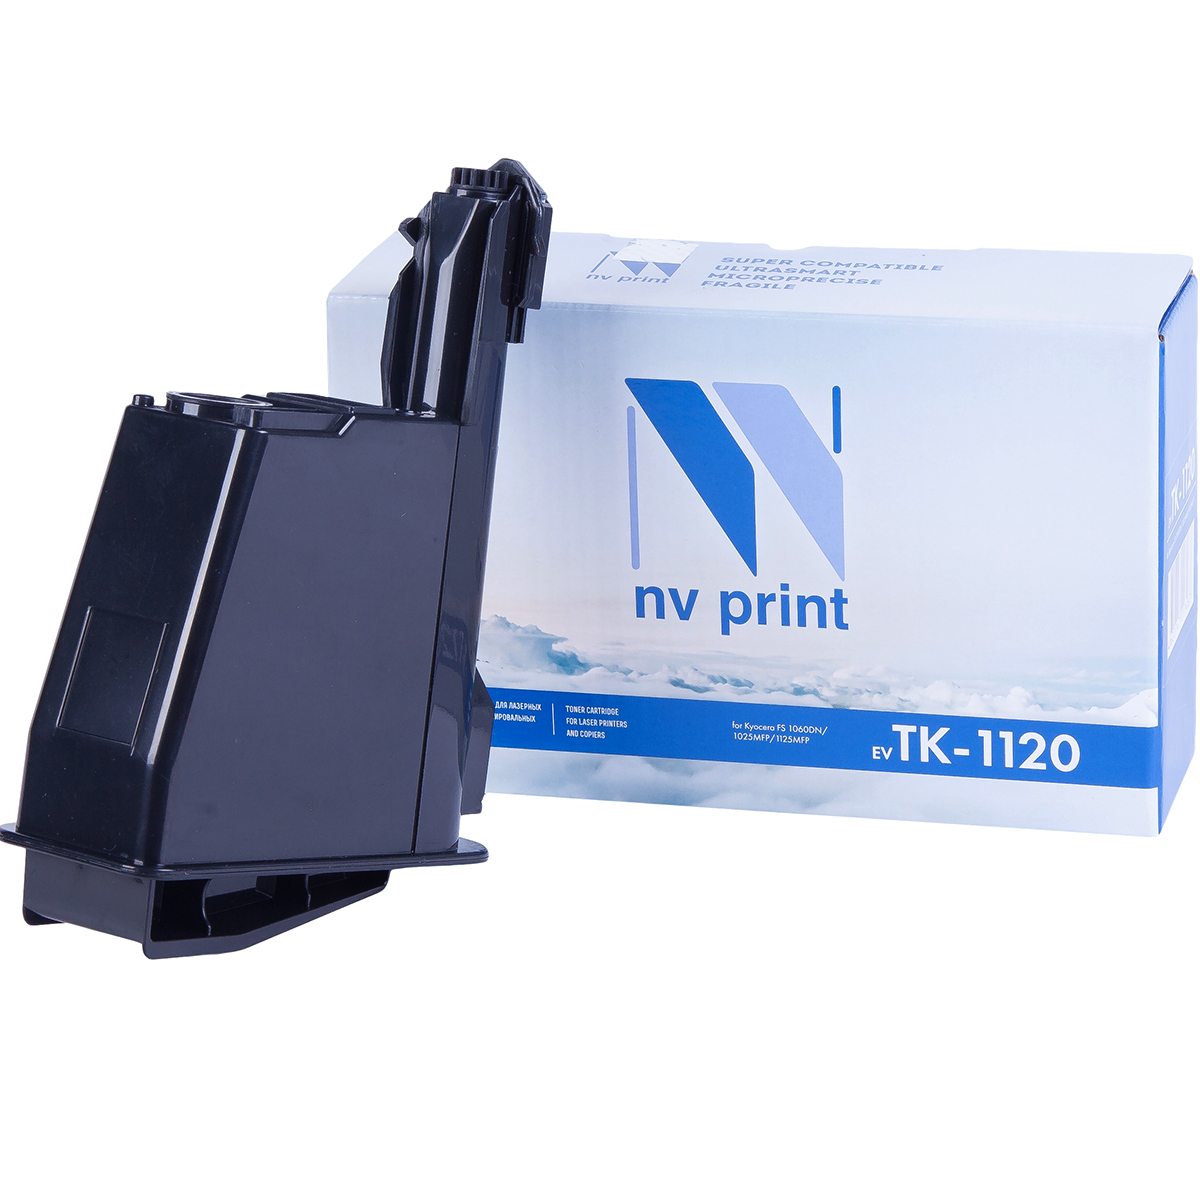 Картридж NV Print TK-1120 для Kyocera FS1060DN/1025MFP/1125MFP (3000k) картридж nvp совместимый nv tk 1120 для kyocera fs 1060dn fs 1025mfp fs 1125mfp 3000k